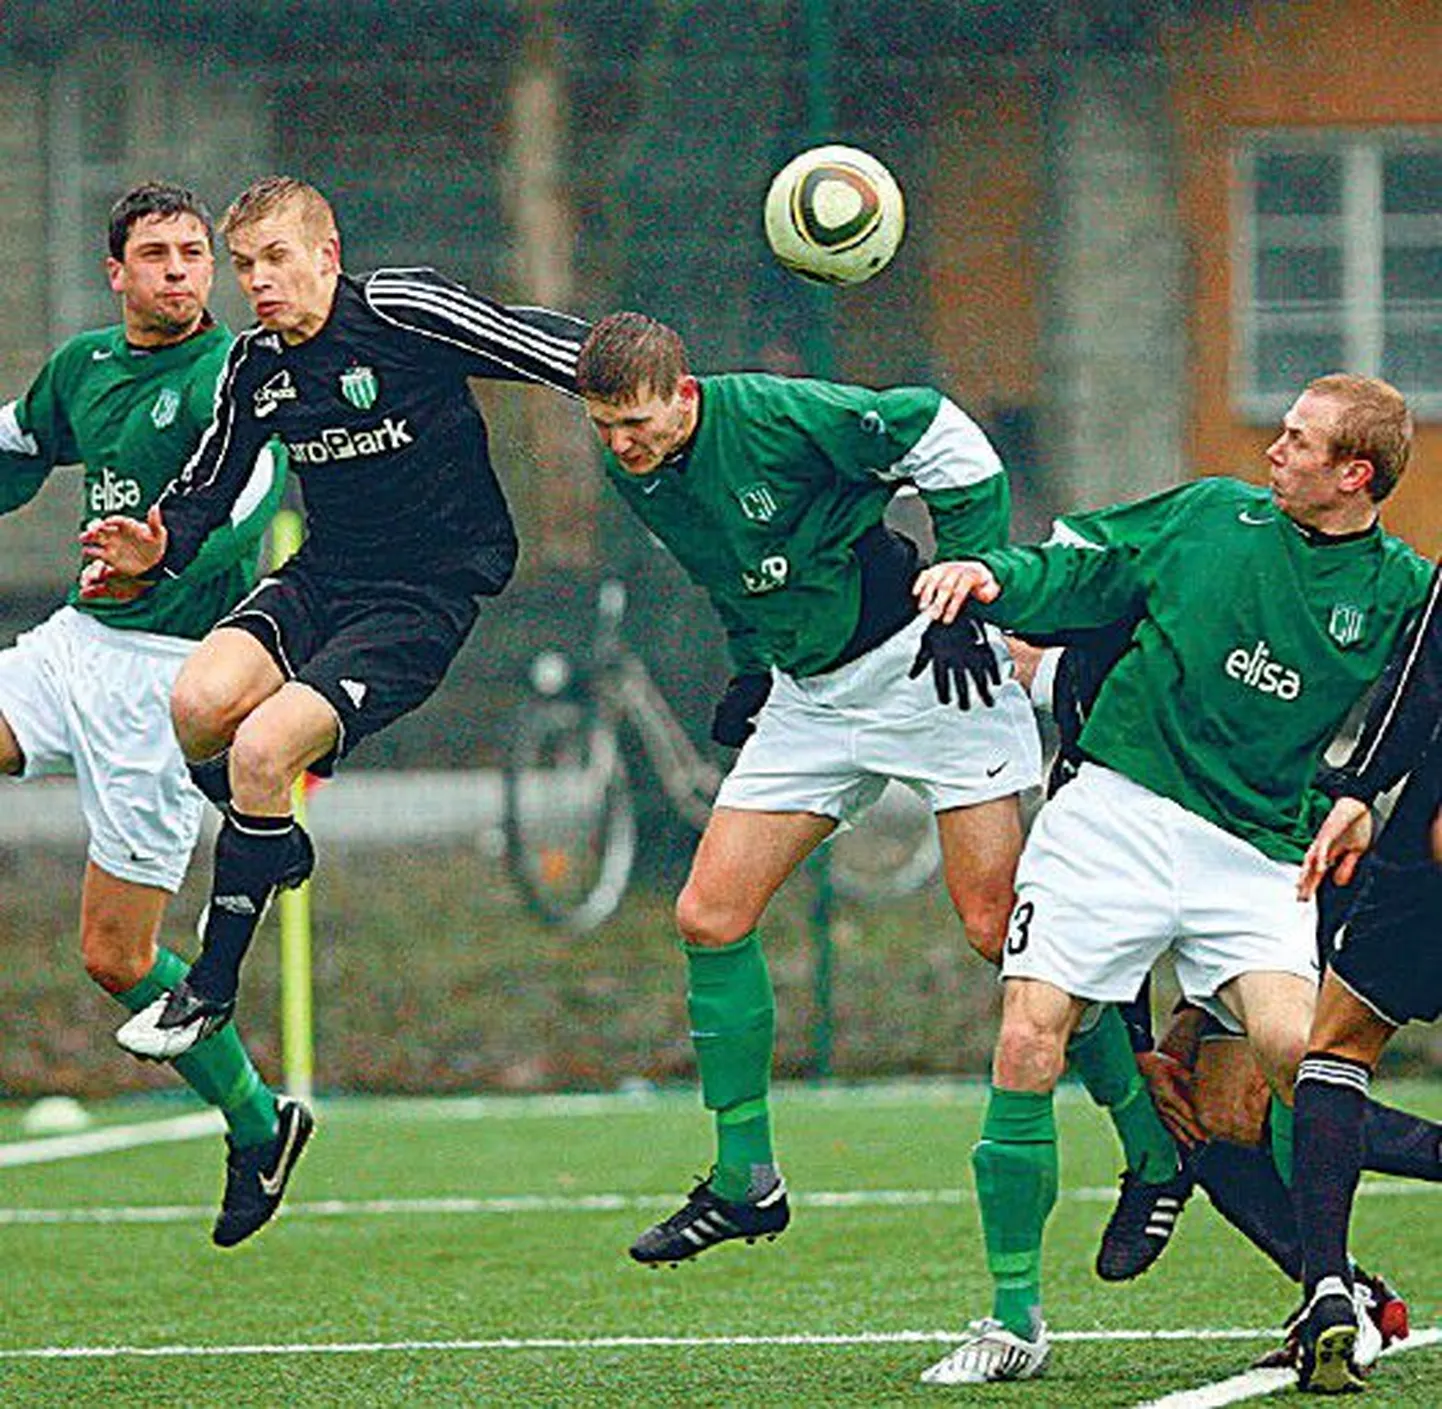 В первом матче нынешнего сезона, в котором встретились футболисты Flora (в зеленой форме) и Levadia, победу со счетом 2:1 одержала команда Levadia.